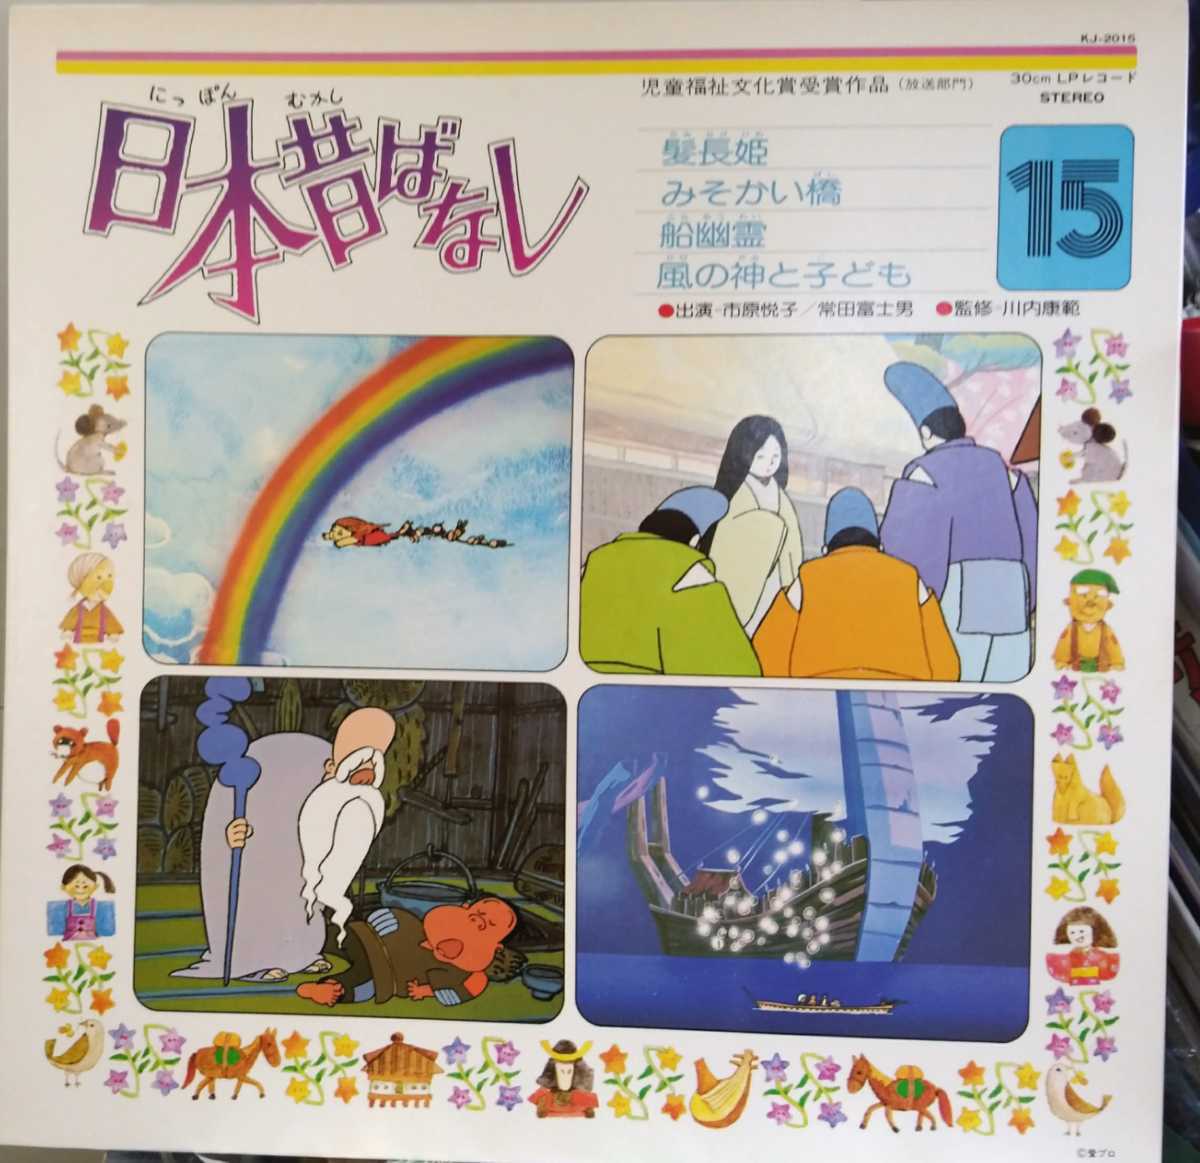 日本昔ばなし 30cm LPレコード 全15巻 www.namhpac.org